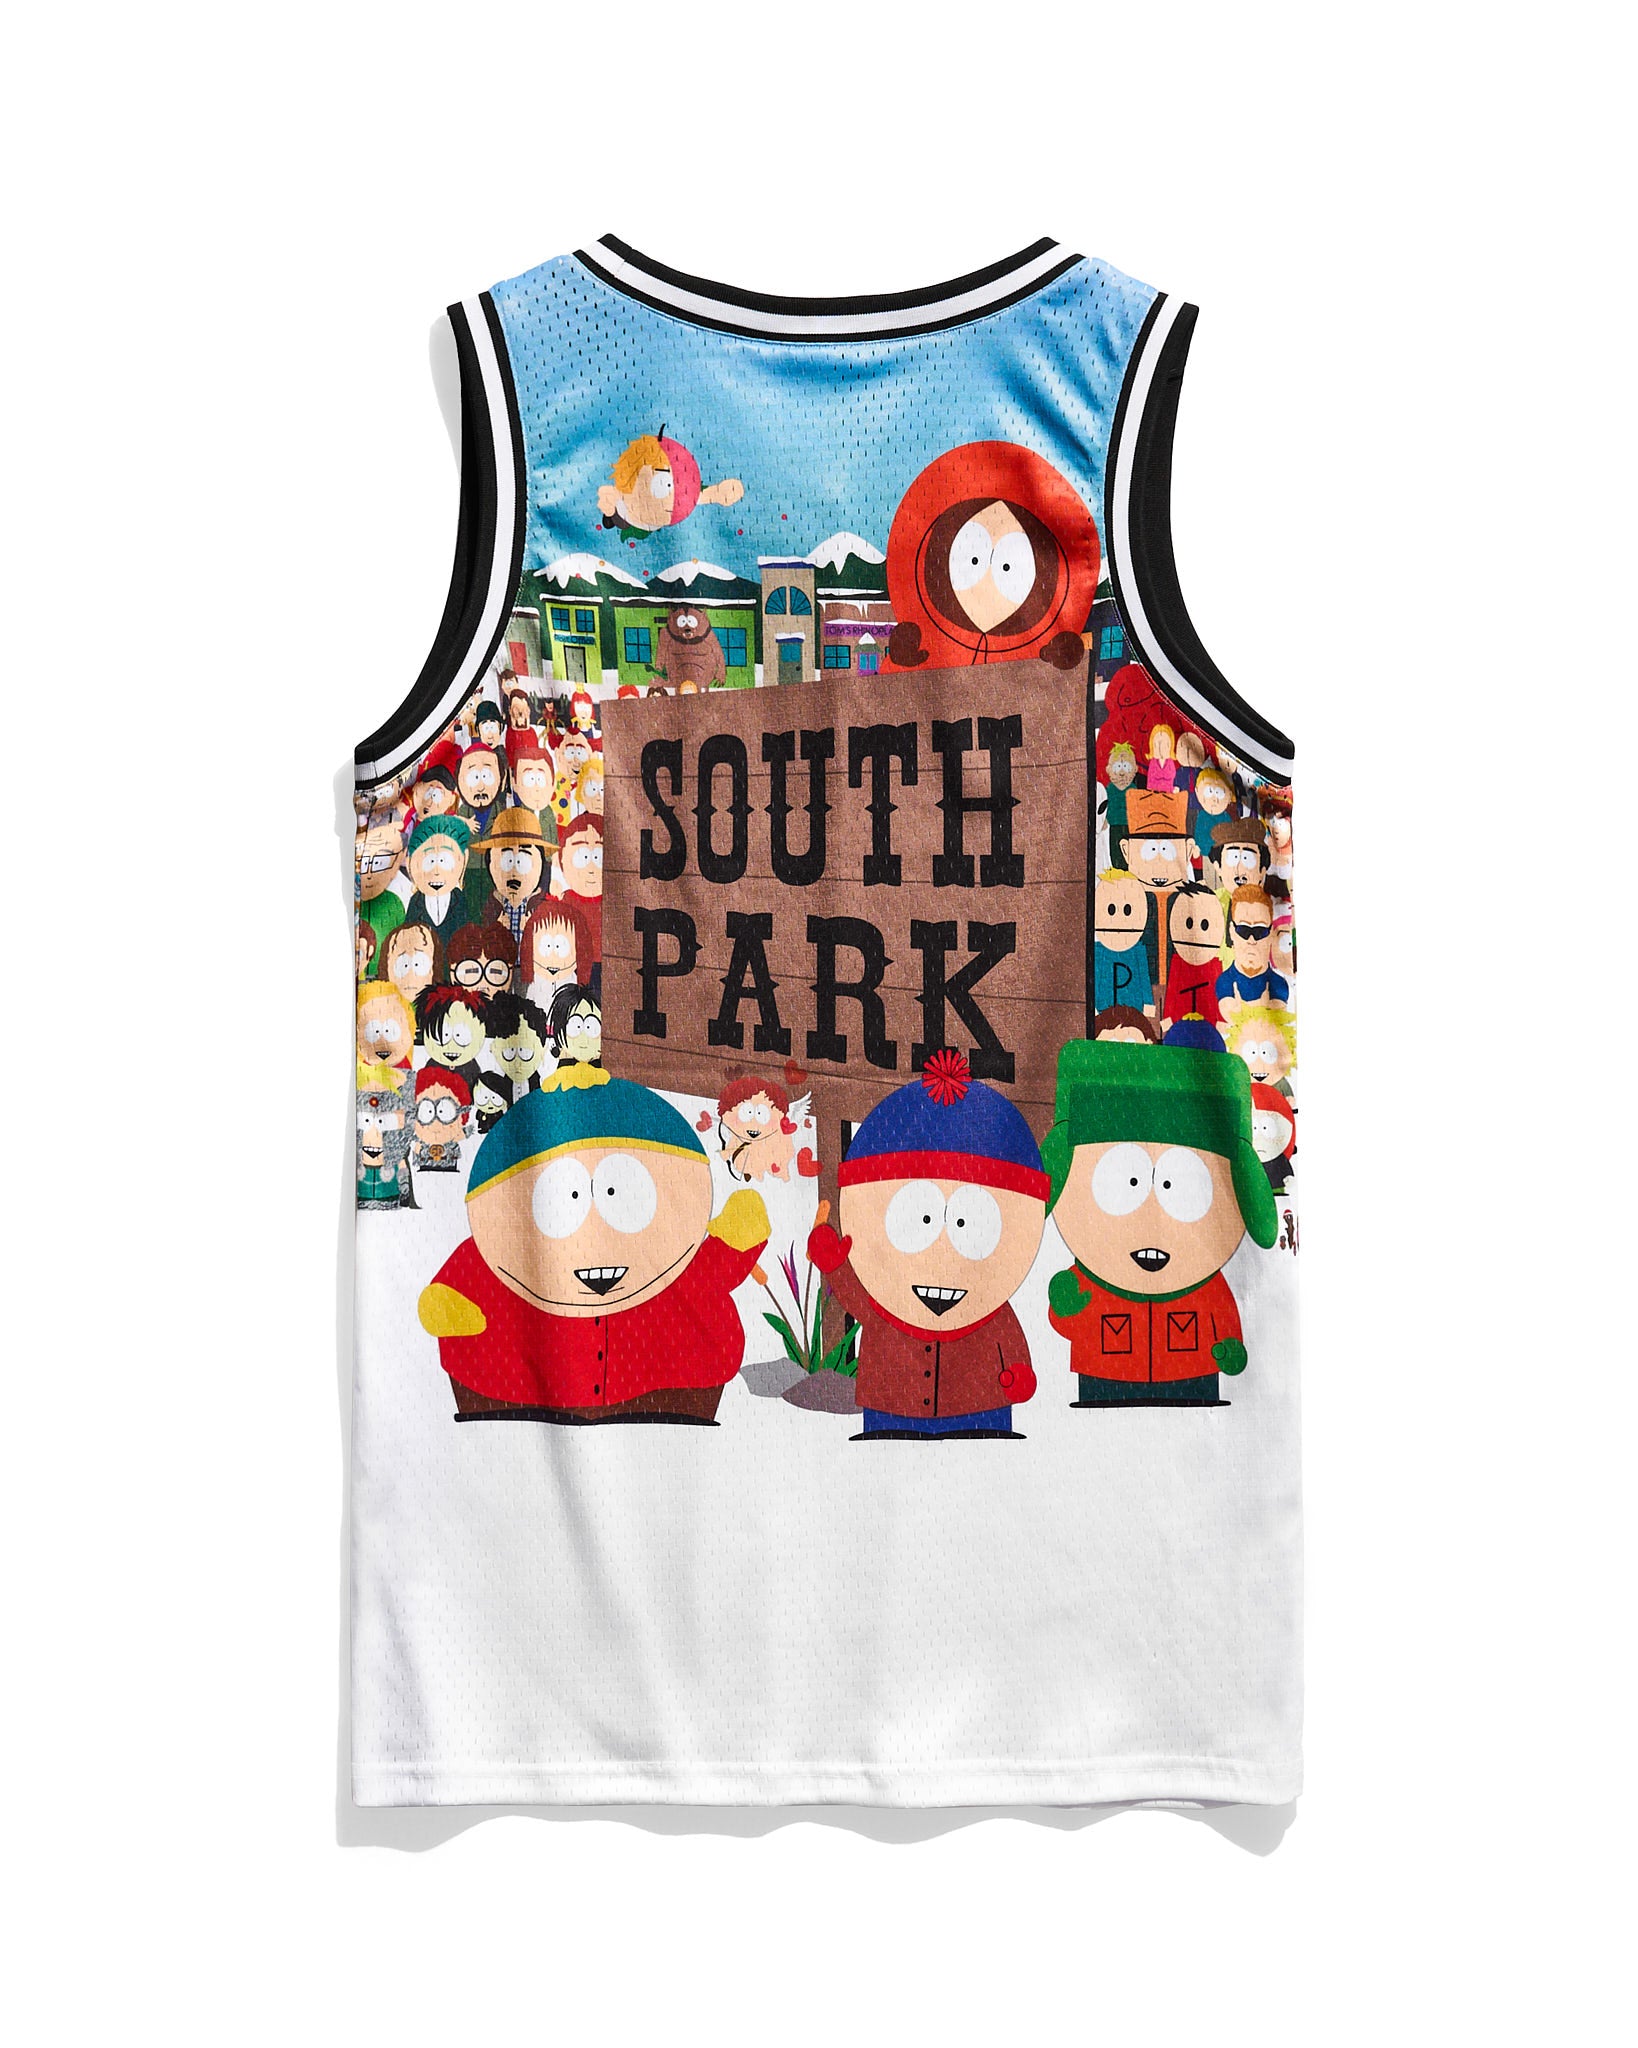 South Park Cast Venice Jersey